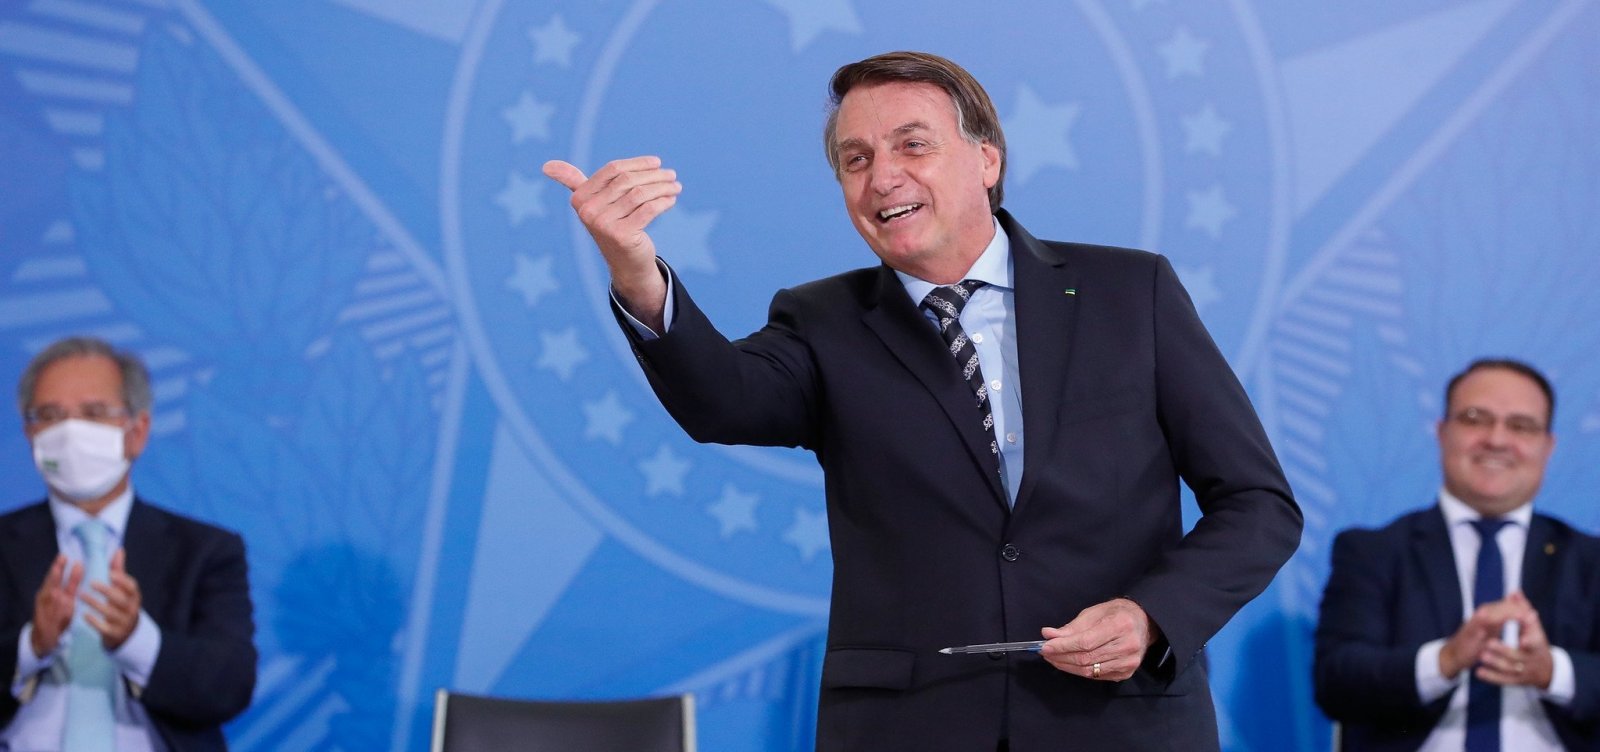 Após resultado do emprego positivo em outubro, Bolsonaro diz que Guedes é insubstituível